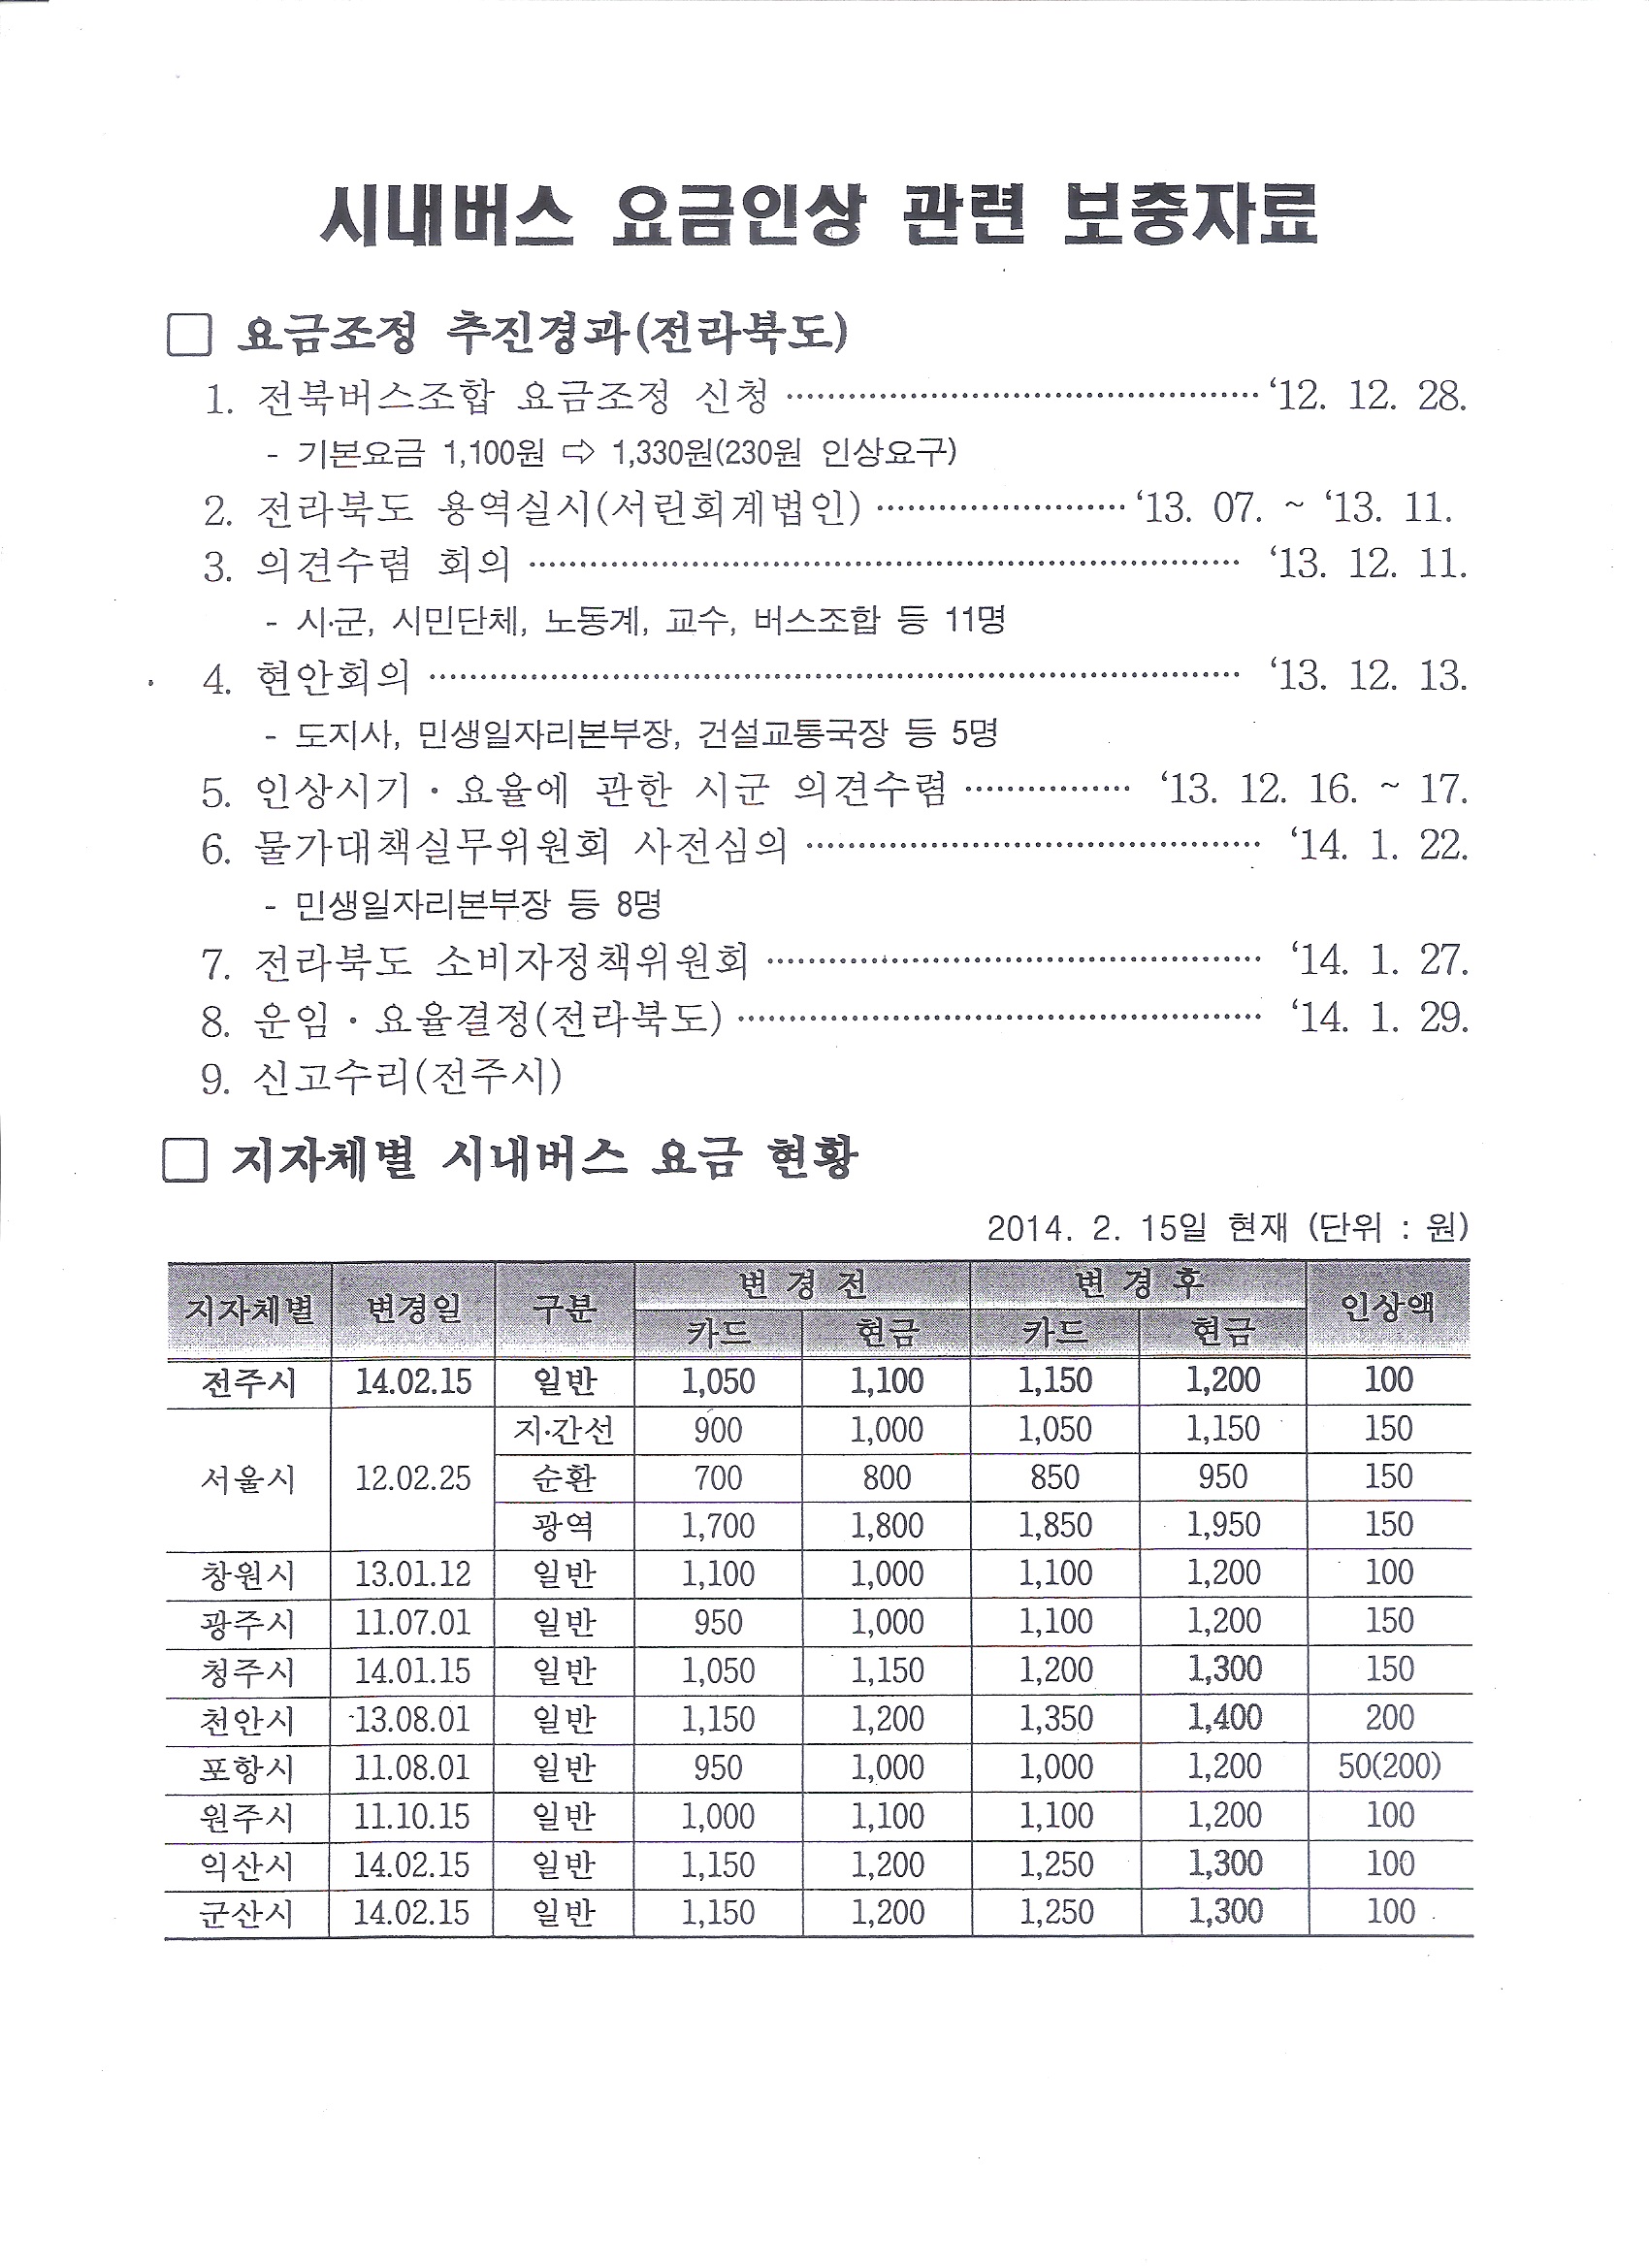 버스요금_전라북도 대중교통과-2551(2014.1.29)호 5.jpg